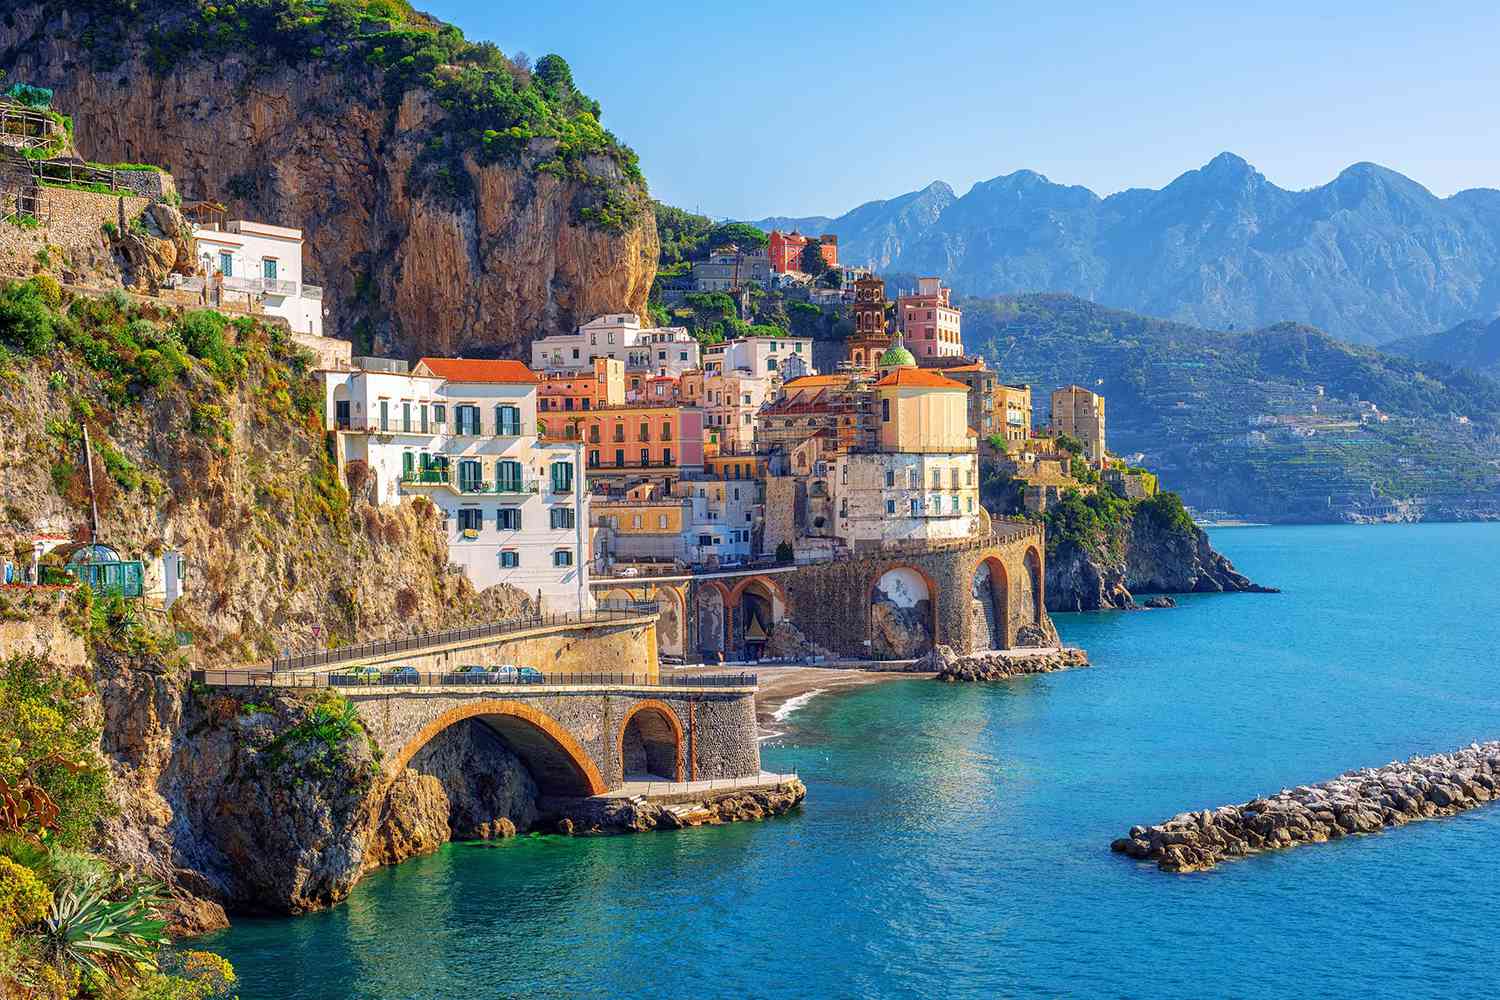 The Amalfi Coast: A Paradise on Earth